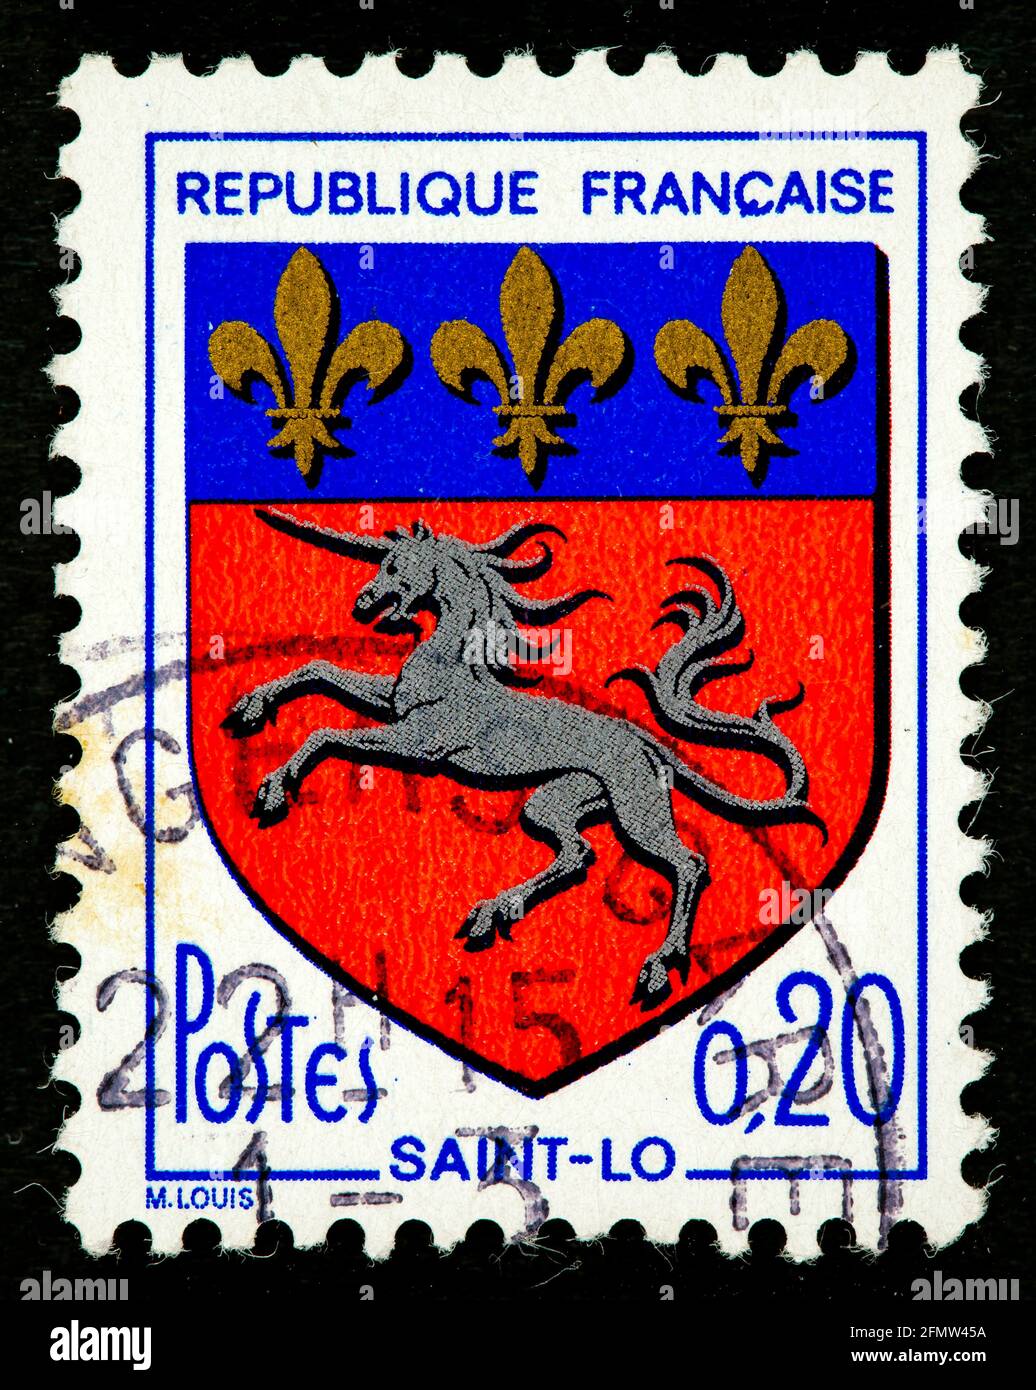 FRANCE - VERS 1966 : un timbre imprimé en France montre les armoiries de Saint-Lo vers 1966 Banque D'Images